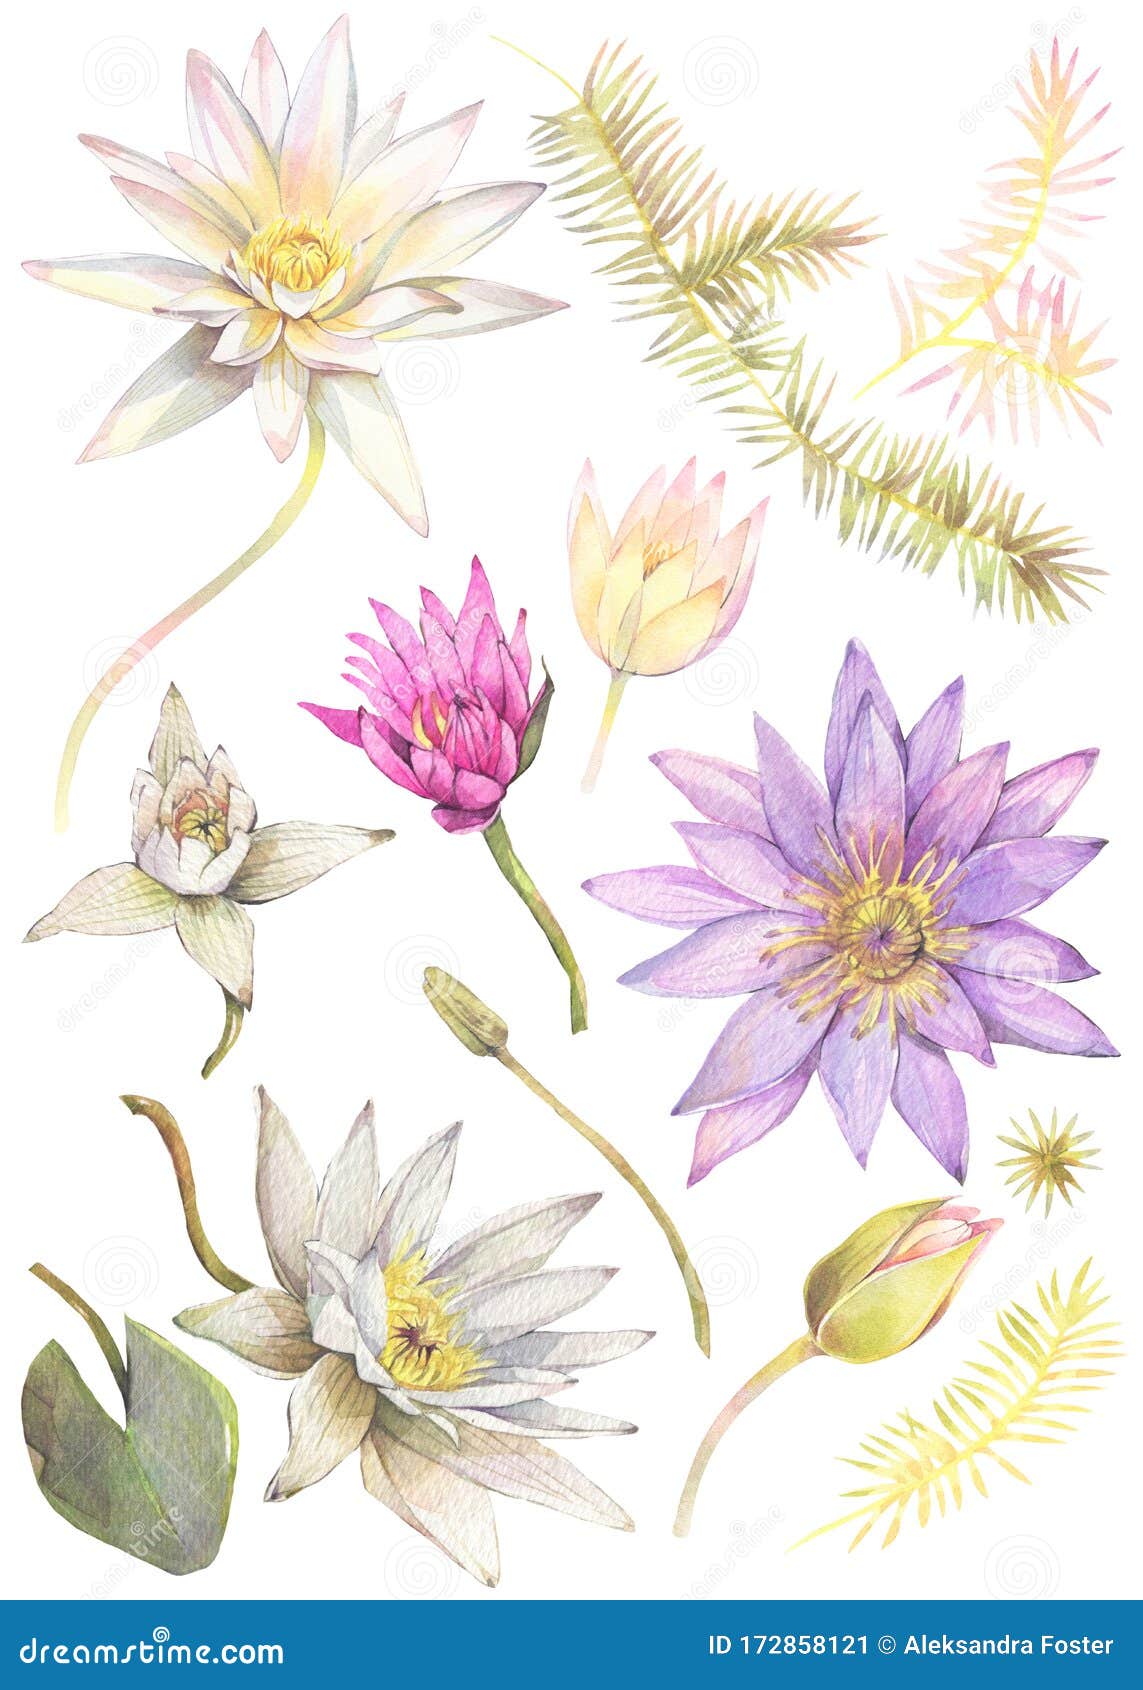 Floral De Flores De Loto Y Algas Marinas Stock de ilustración - Ilustración  de tropical, floral: 172858121